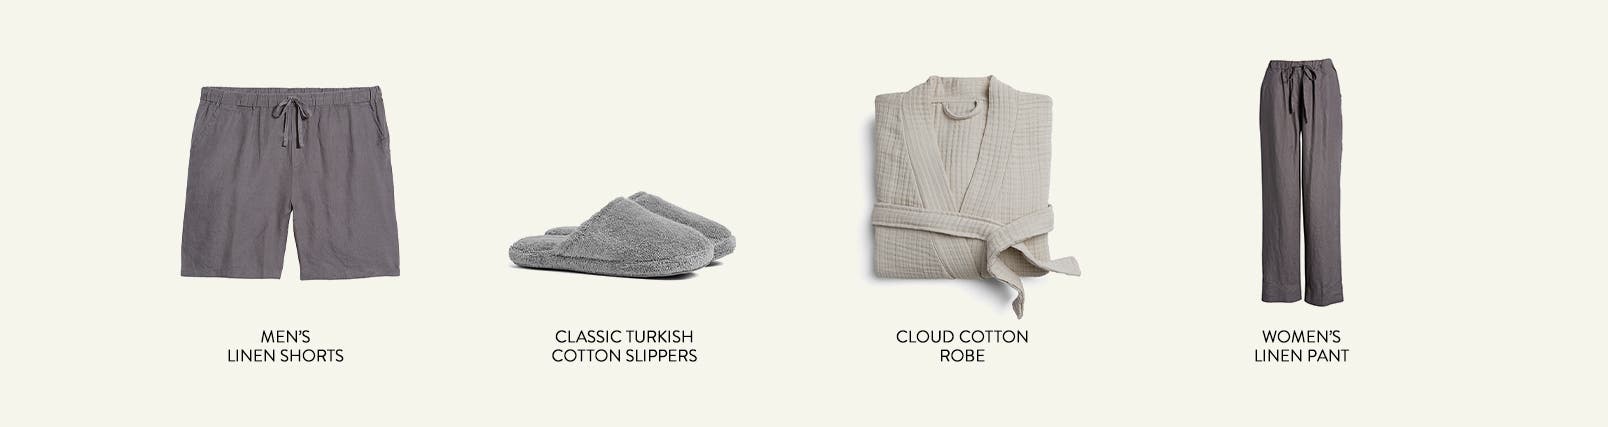 Men's linen shorts, cotton slippers, cloud cotton robe and women's linen pants.